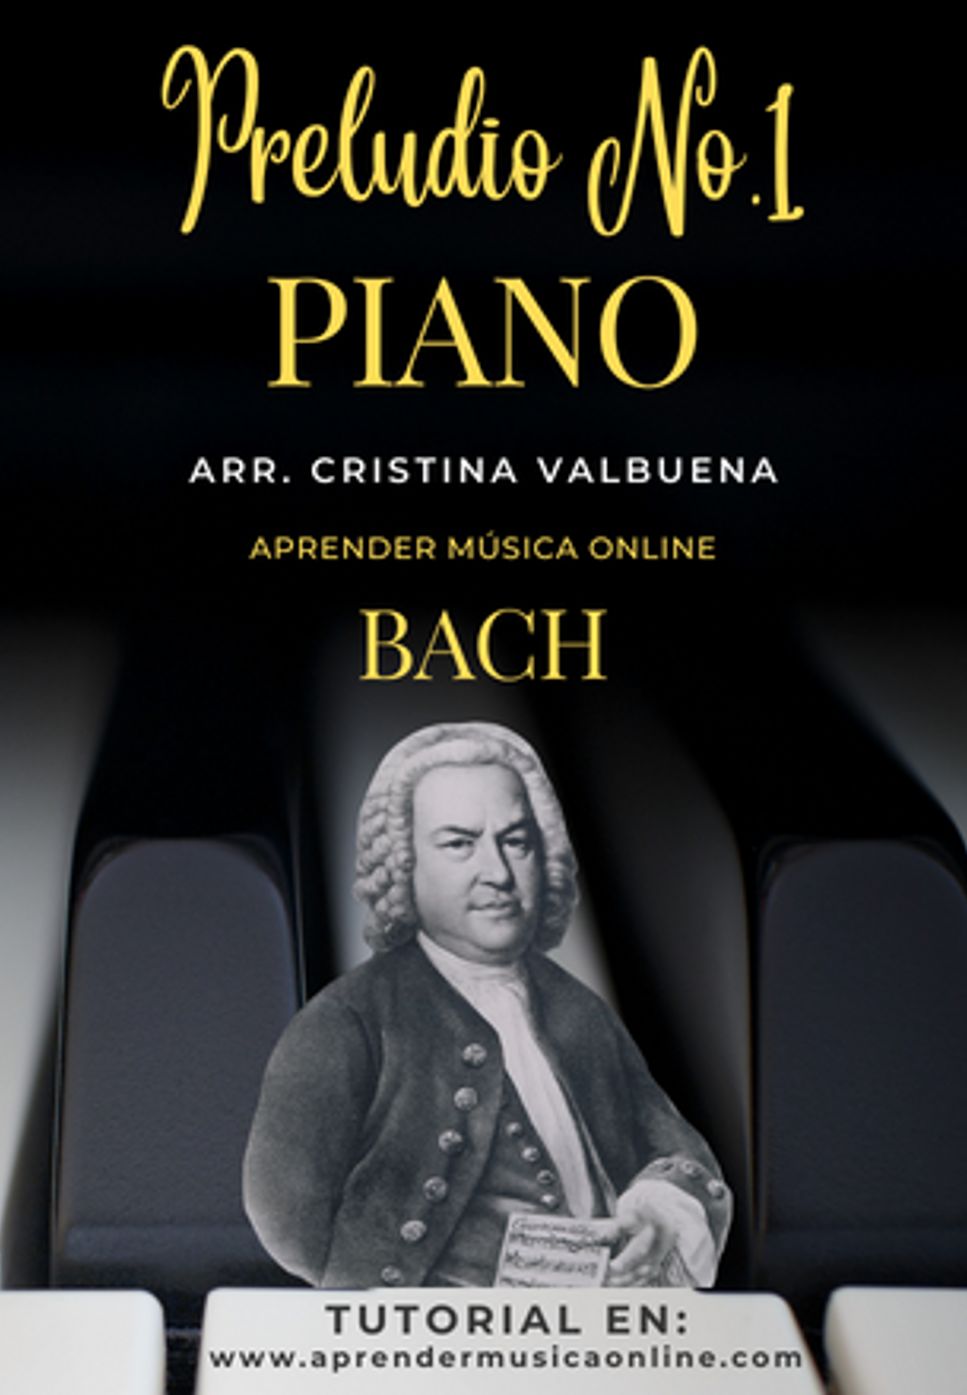 Johann Sebastian Bach - Preludio nº1 en Do Mayor by Cristina Valbuena